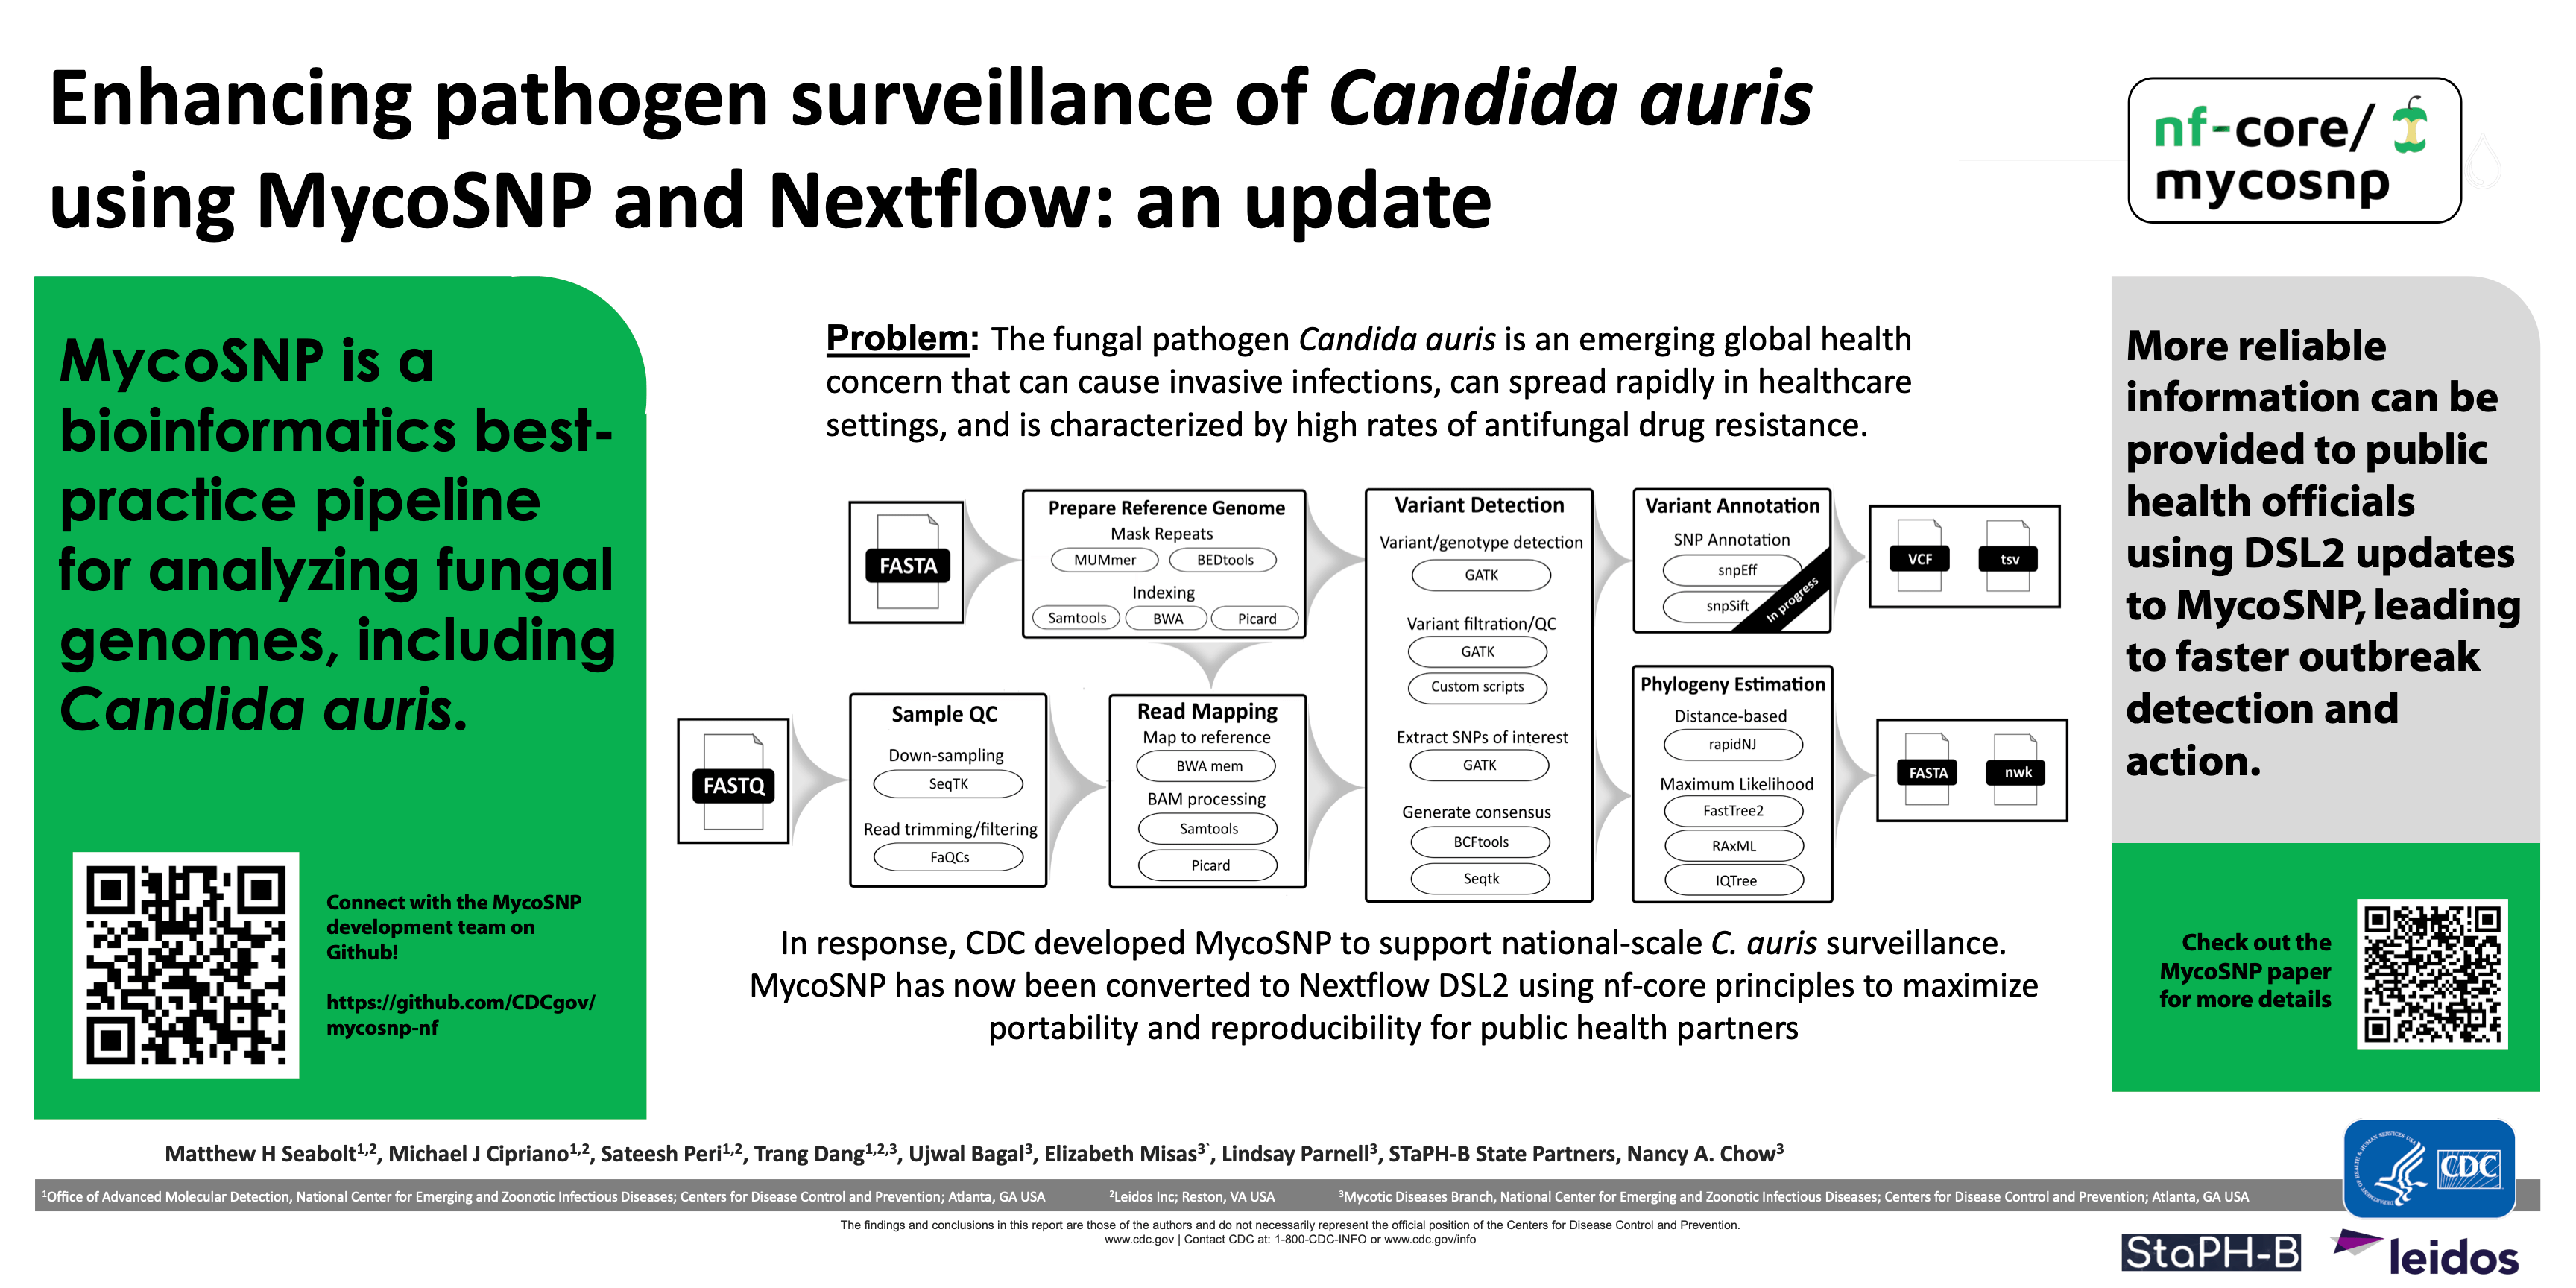 Enhancing pathogen surveillance of Candida auris using MycoSNP and Nextflow: an update